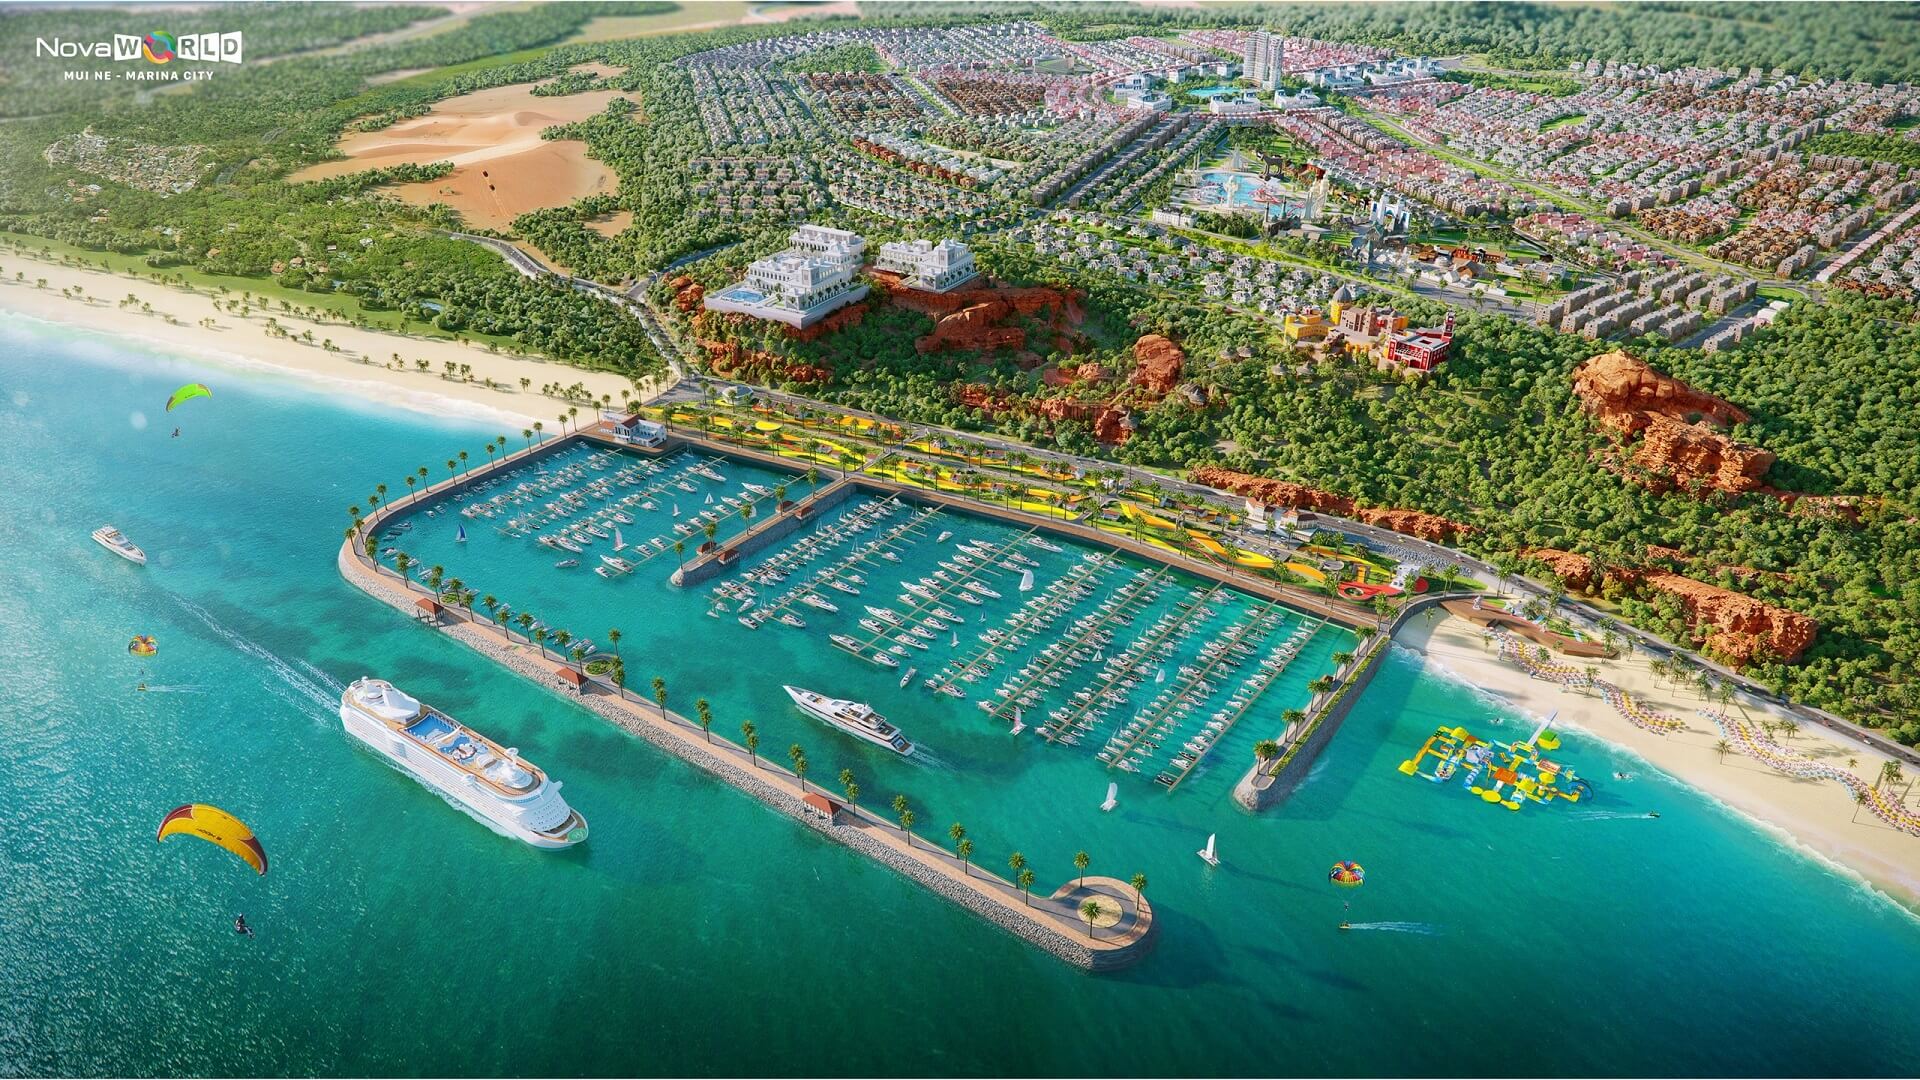 Novaworld Mũi Né Marina City - Bảng Giá Ưu Đãi Mới Nhất 2022